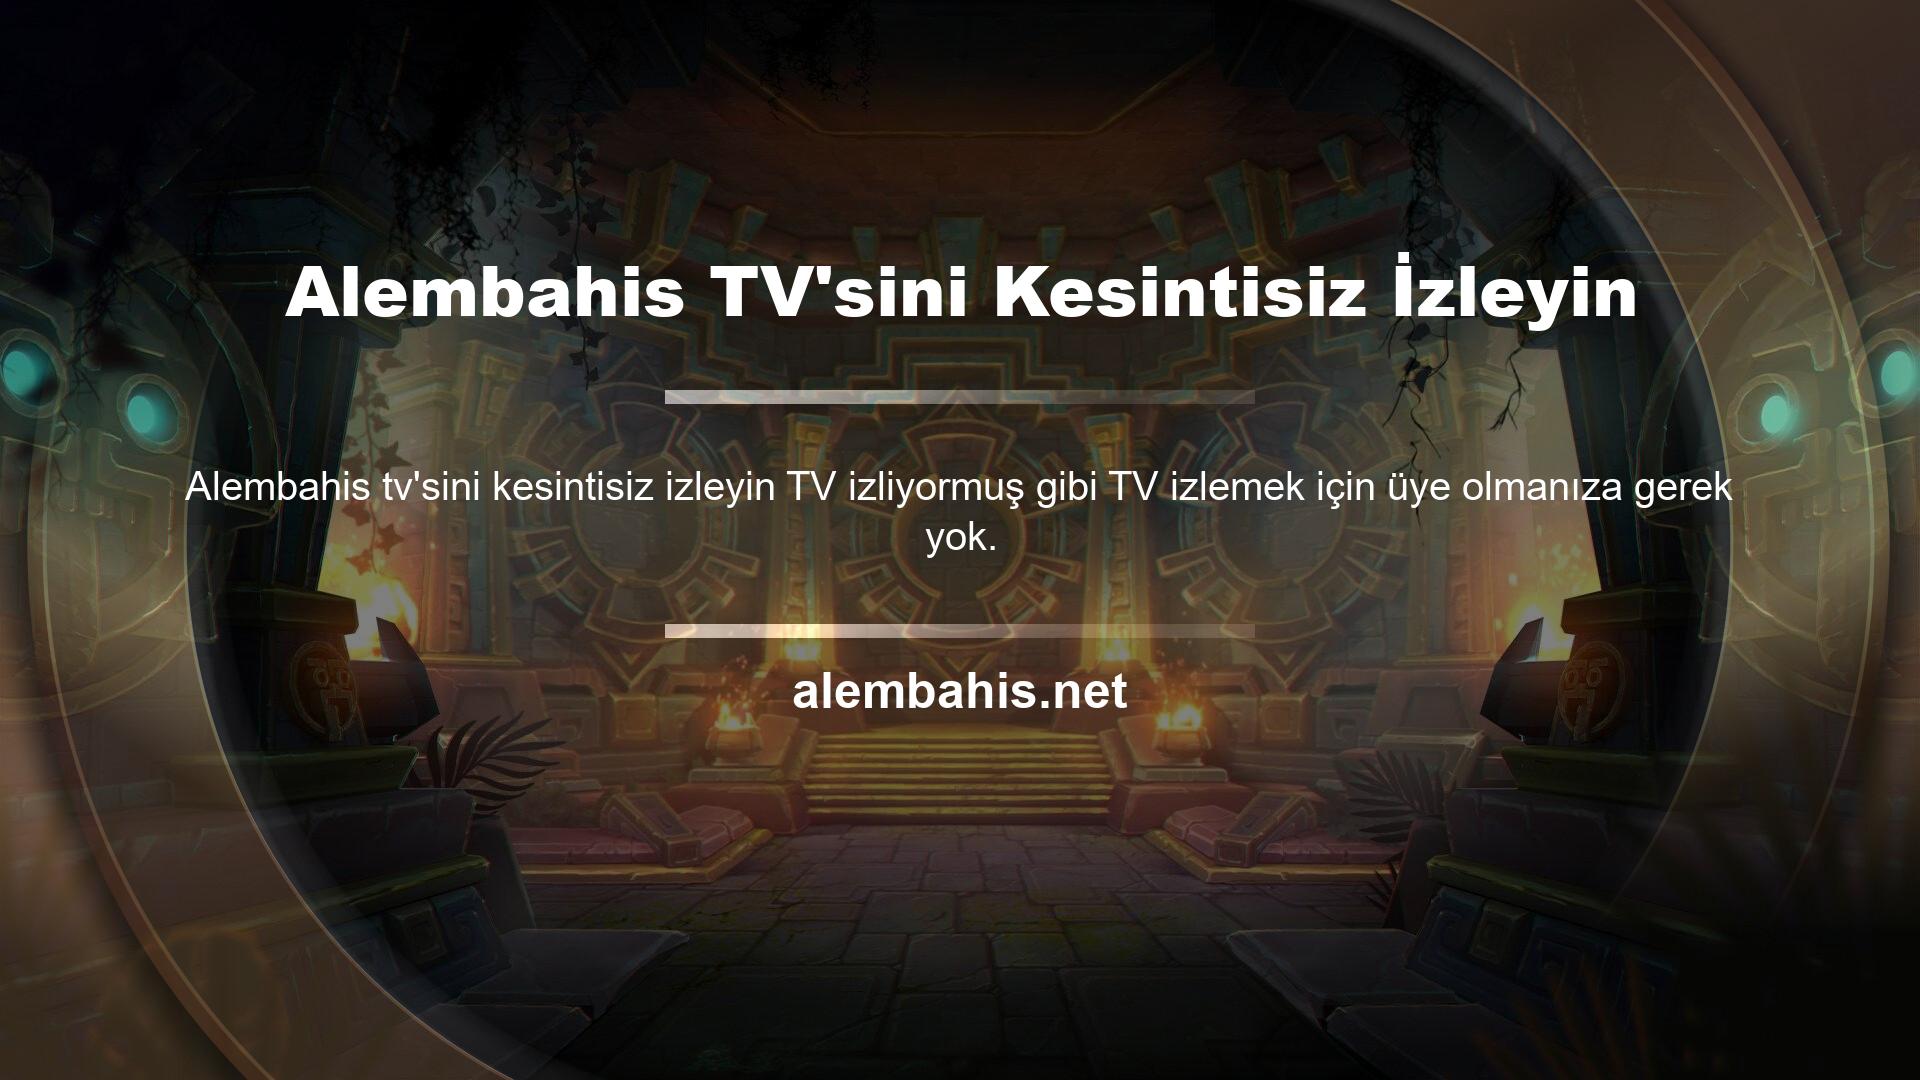 Alembahis TV gibi halka ücretsiz, kesintisiz TV sunmaktadır